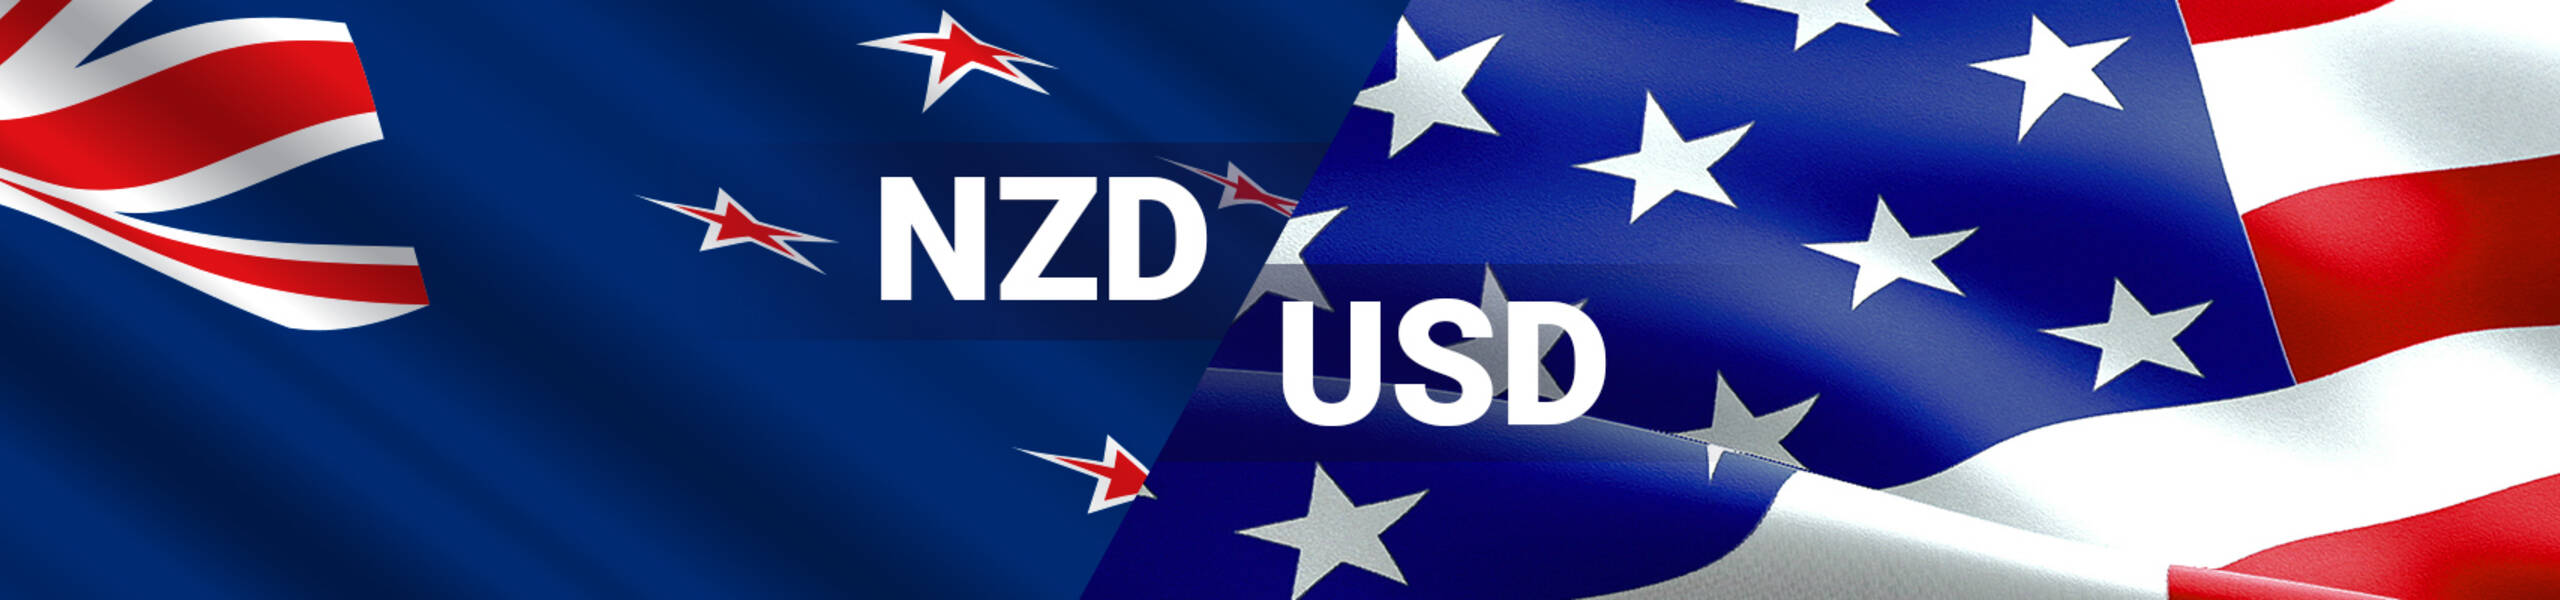 NZD/USD Con nuevo objetivo al alza en 0.6922